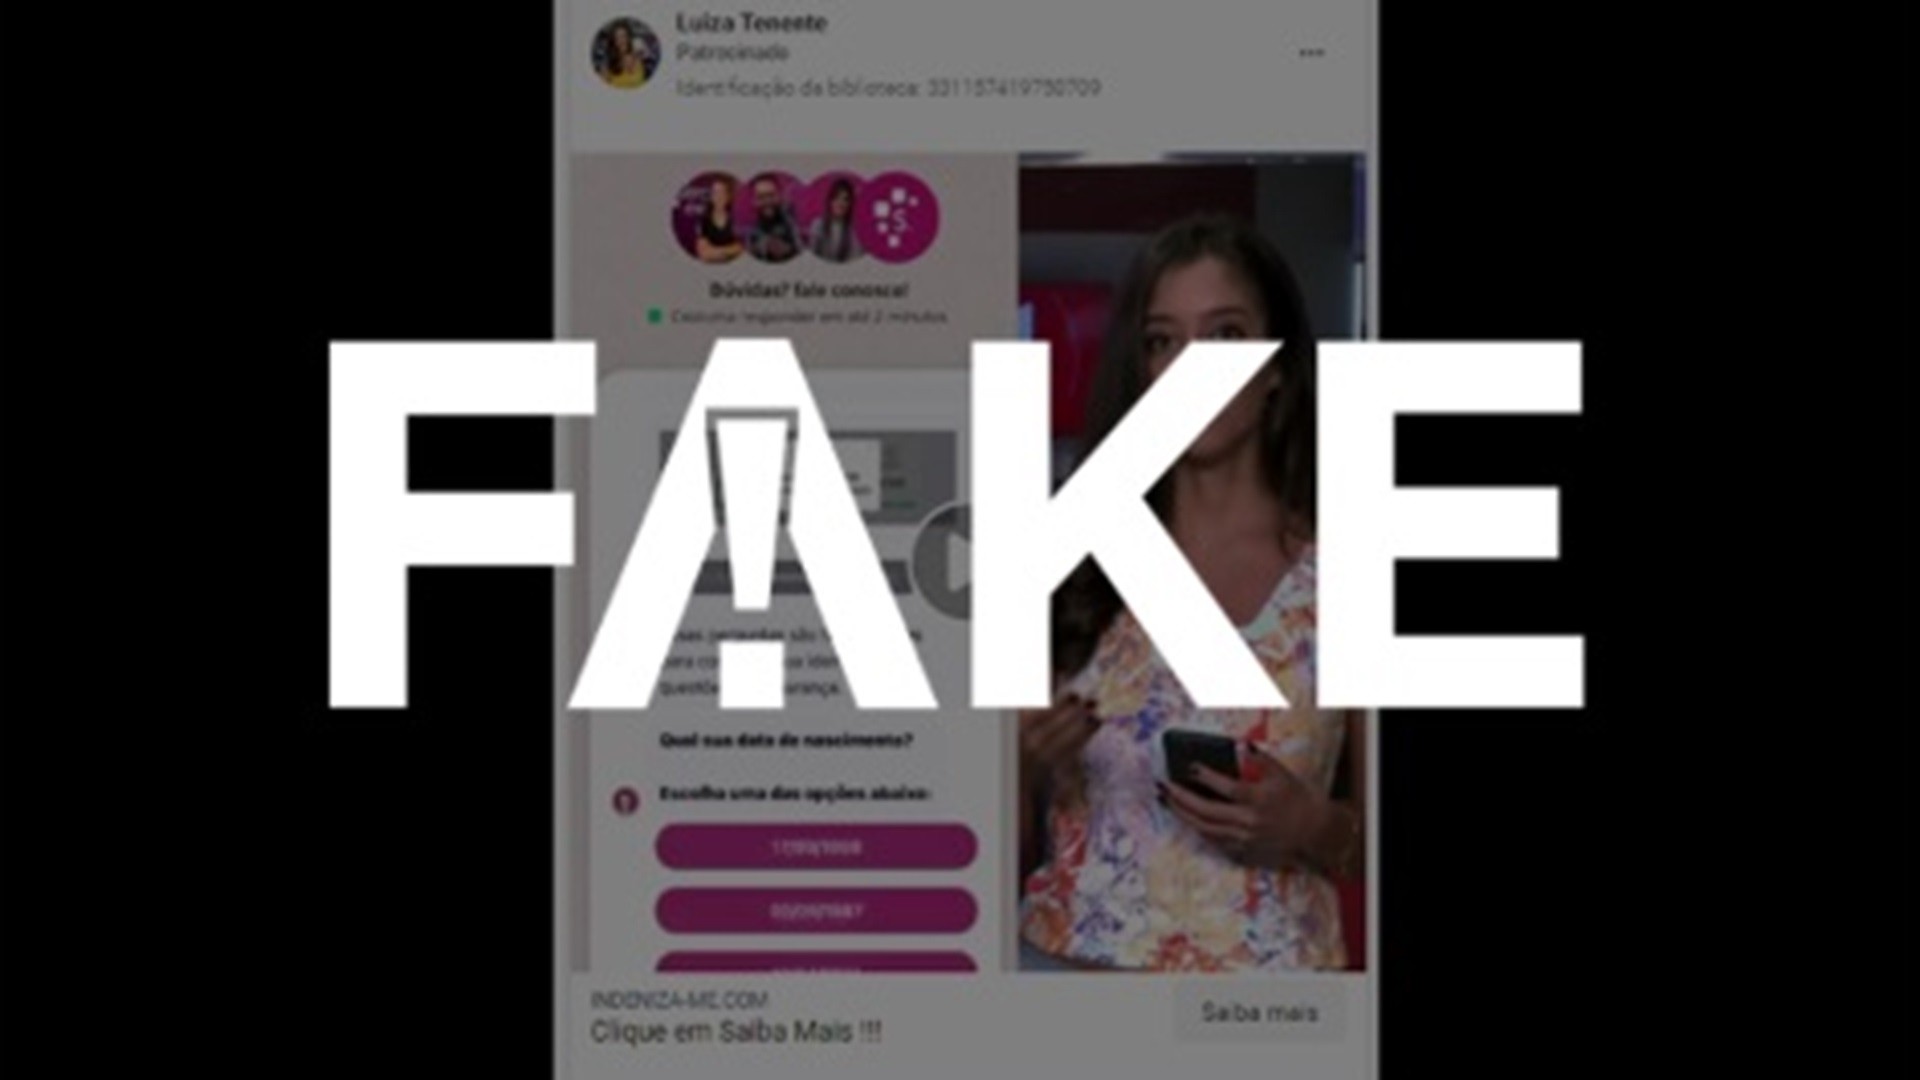 É #FAKE vídeo que usa imagem de Luiza Tenente e Fátima Bernardes para anunciar indenização da Serasa; trata-se de um golpe